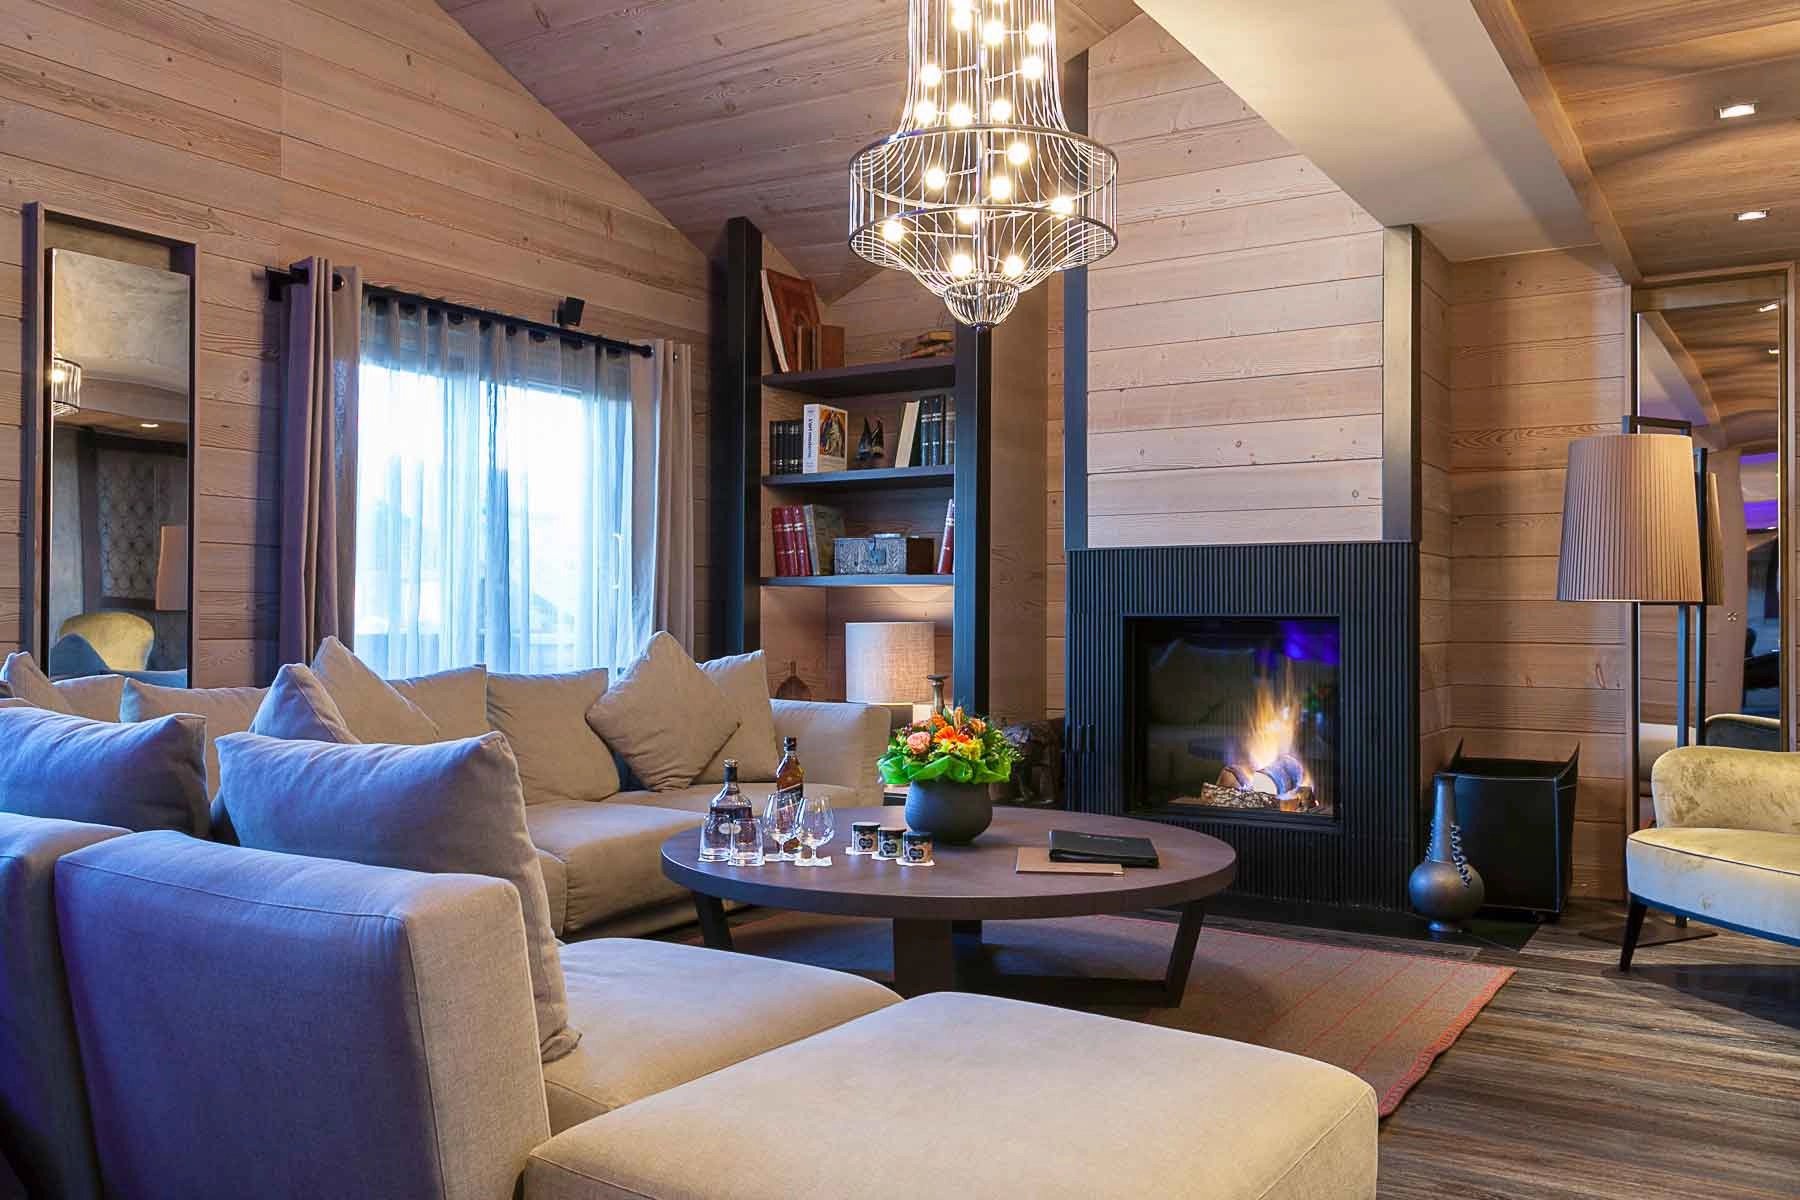 Living-room Chandelier Wooden floor Fireplace